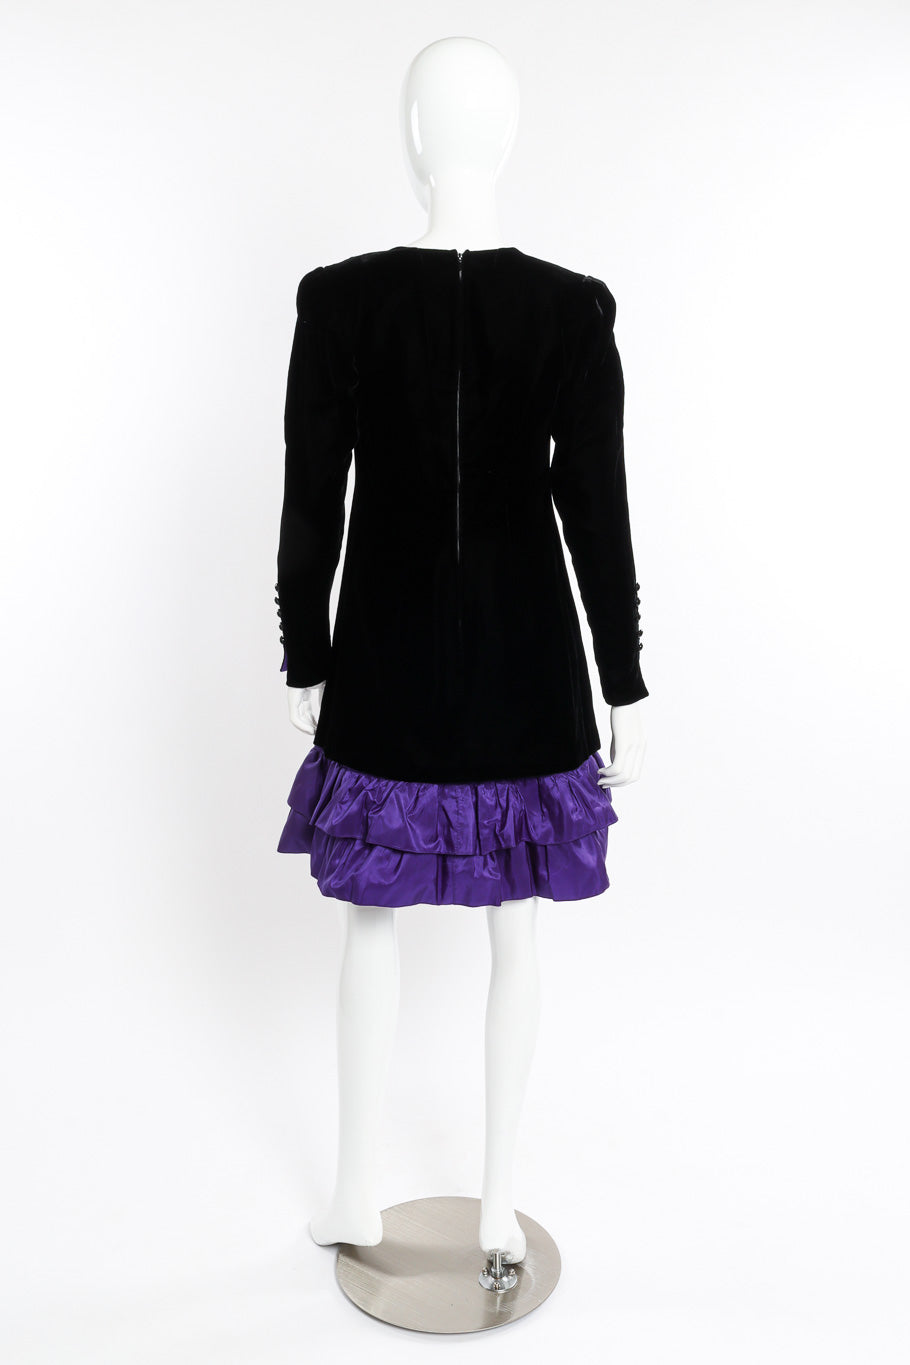 Velvet Bow Dress by Nina Ricci on mannequin back @recessla